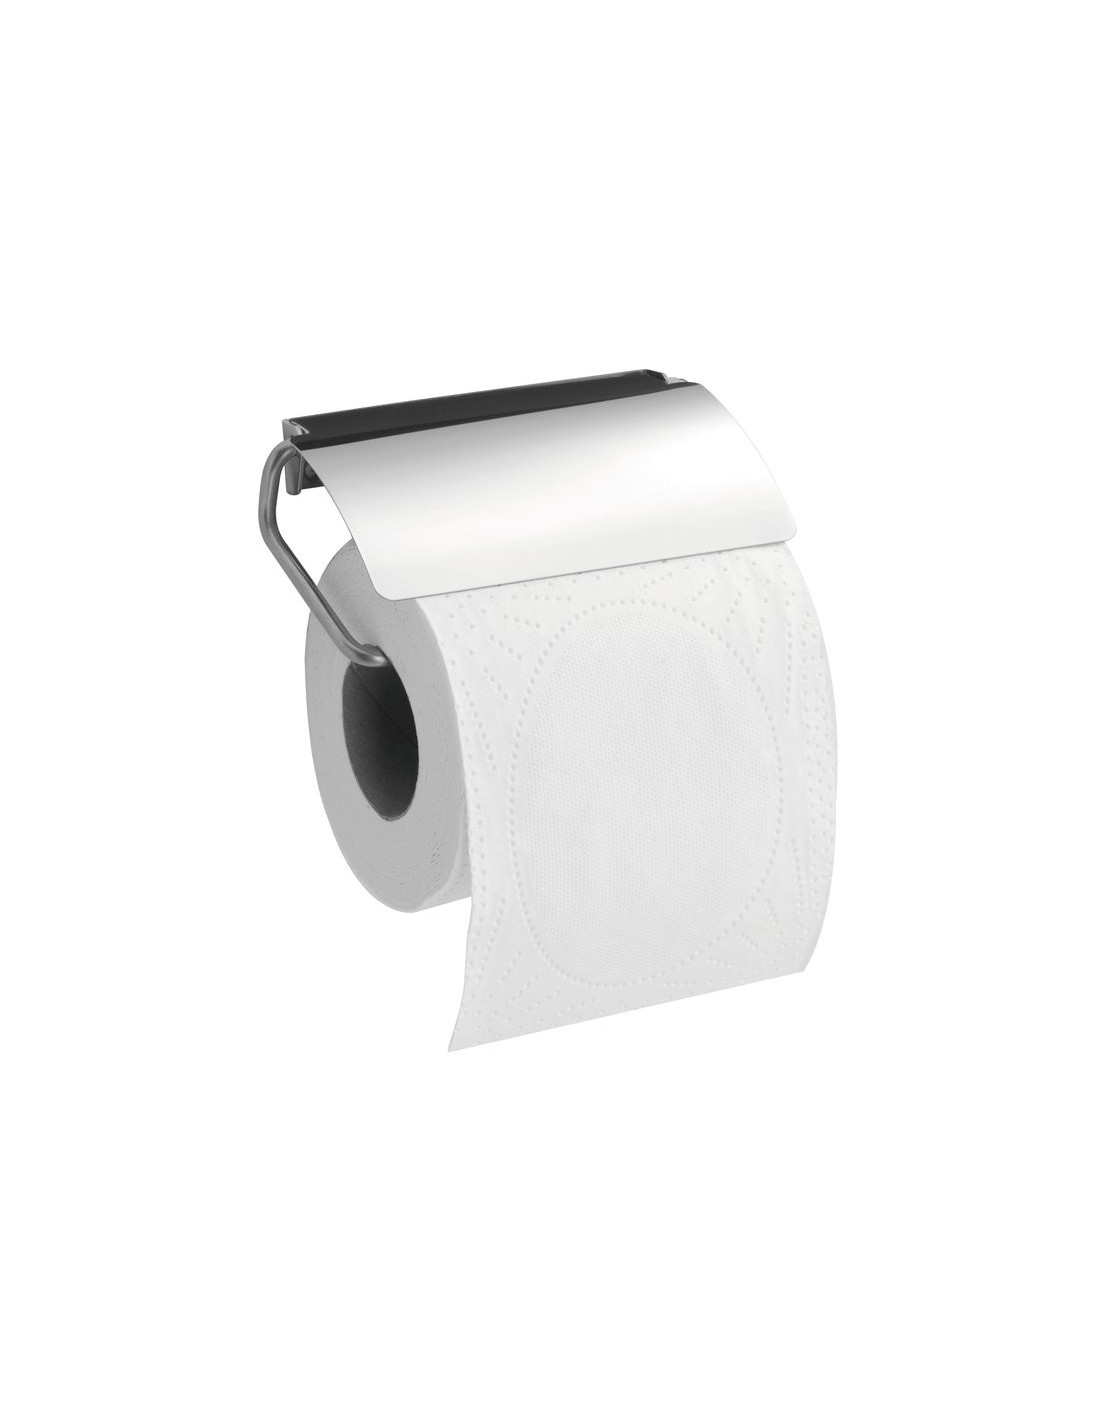 Modifier : Distributeur Inox pour papier wc en rouleau - PELLET 063622 -  Plomberie Online